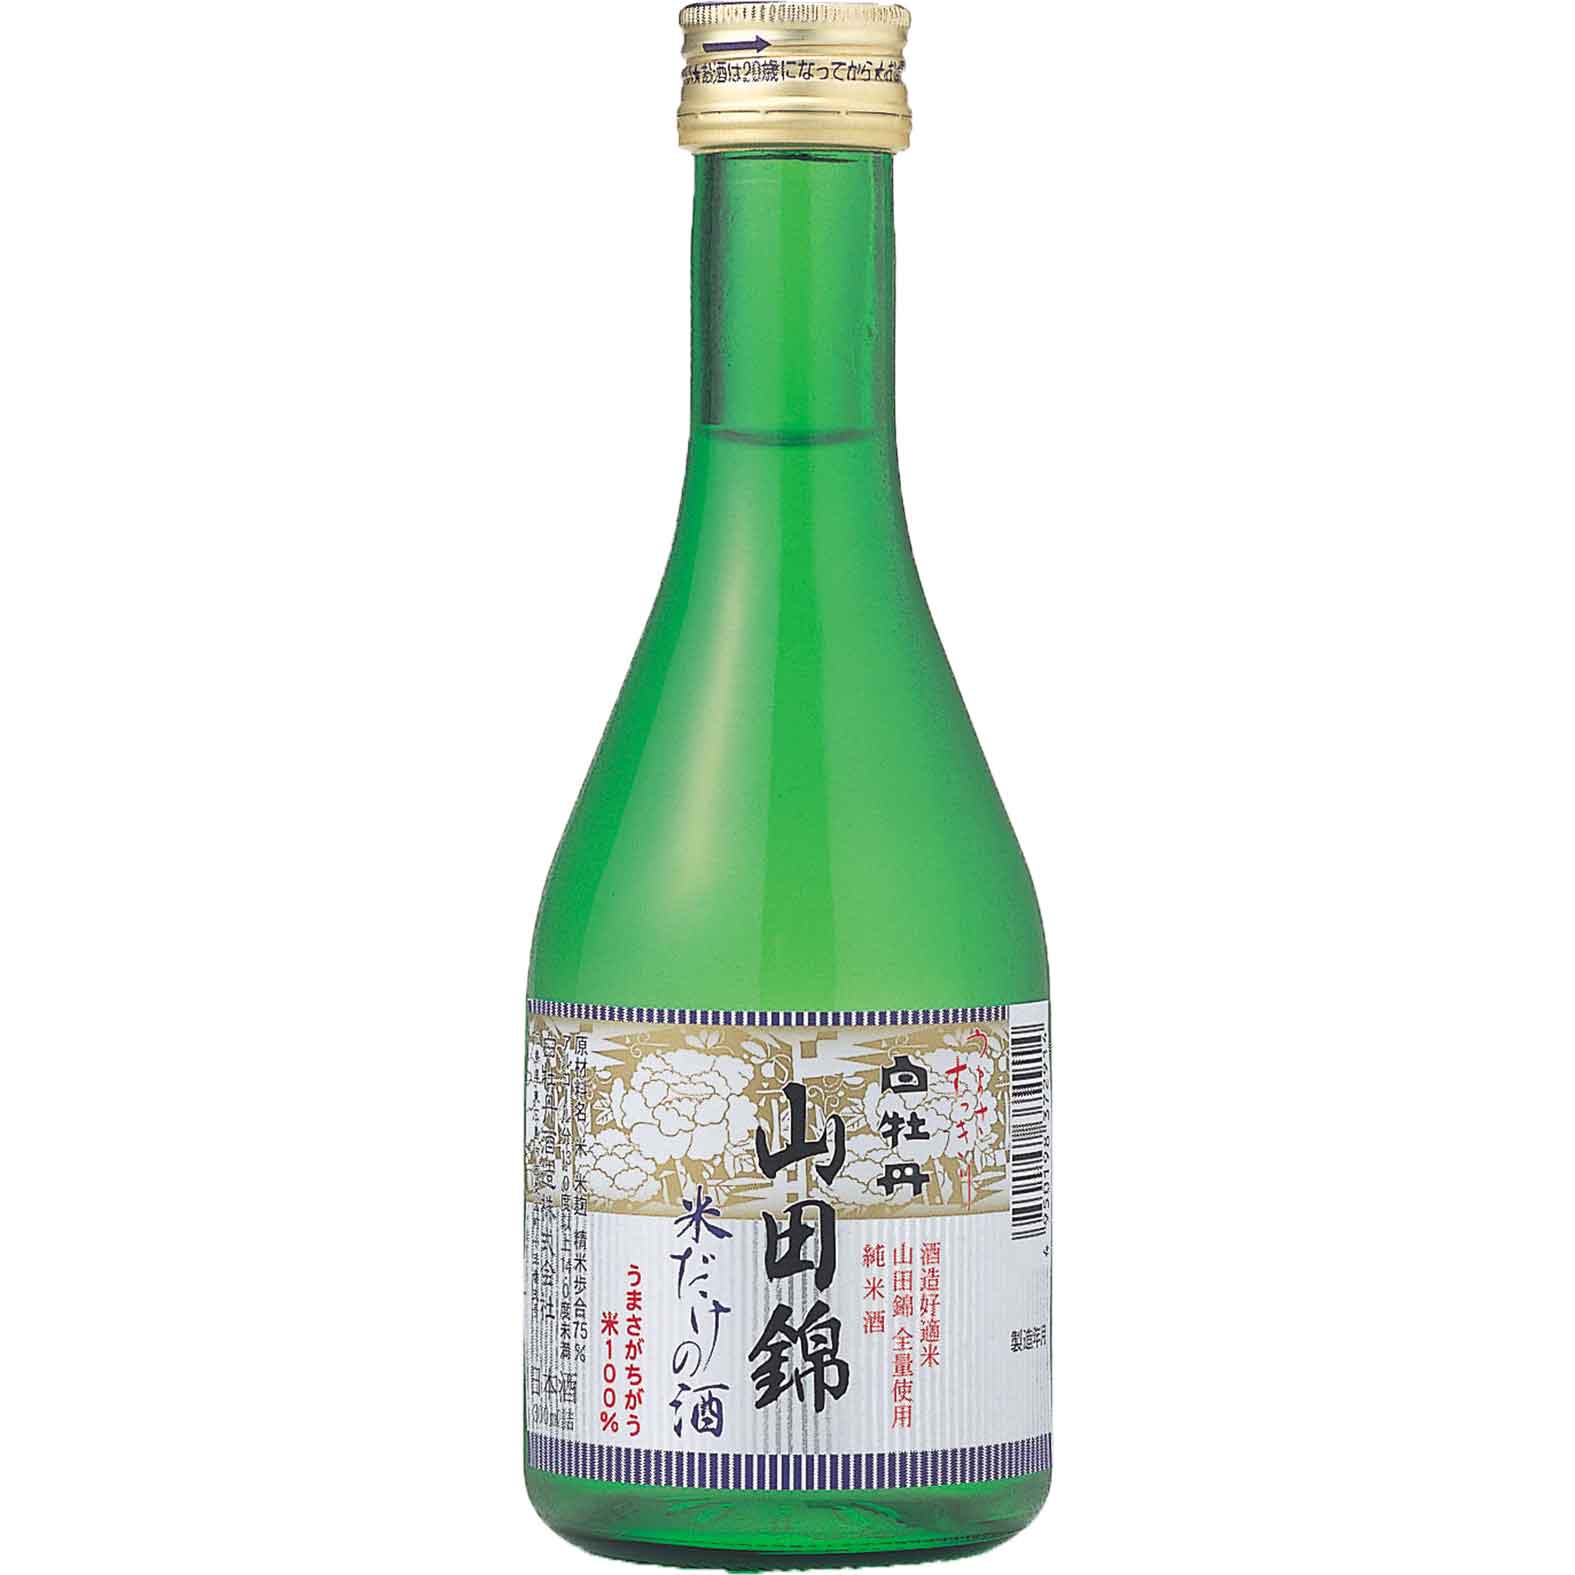 【日本酒 白牡丹】純米酒 山田錦 米だけの酒 300ml瓶詰